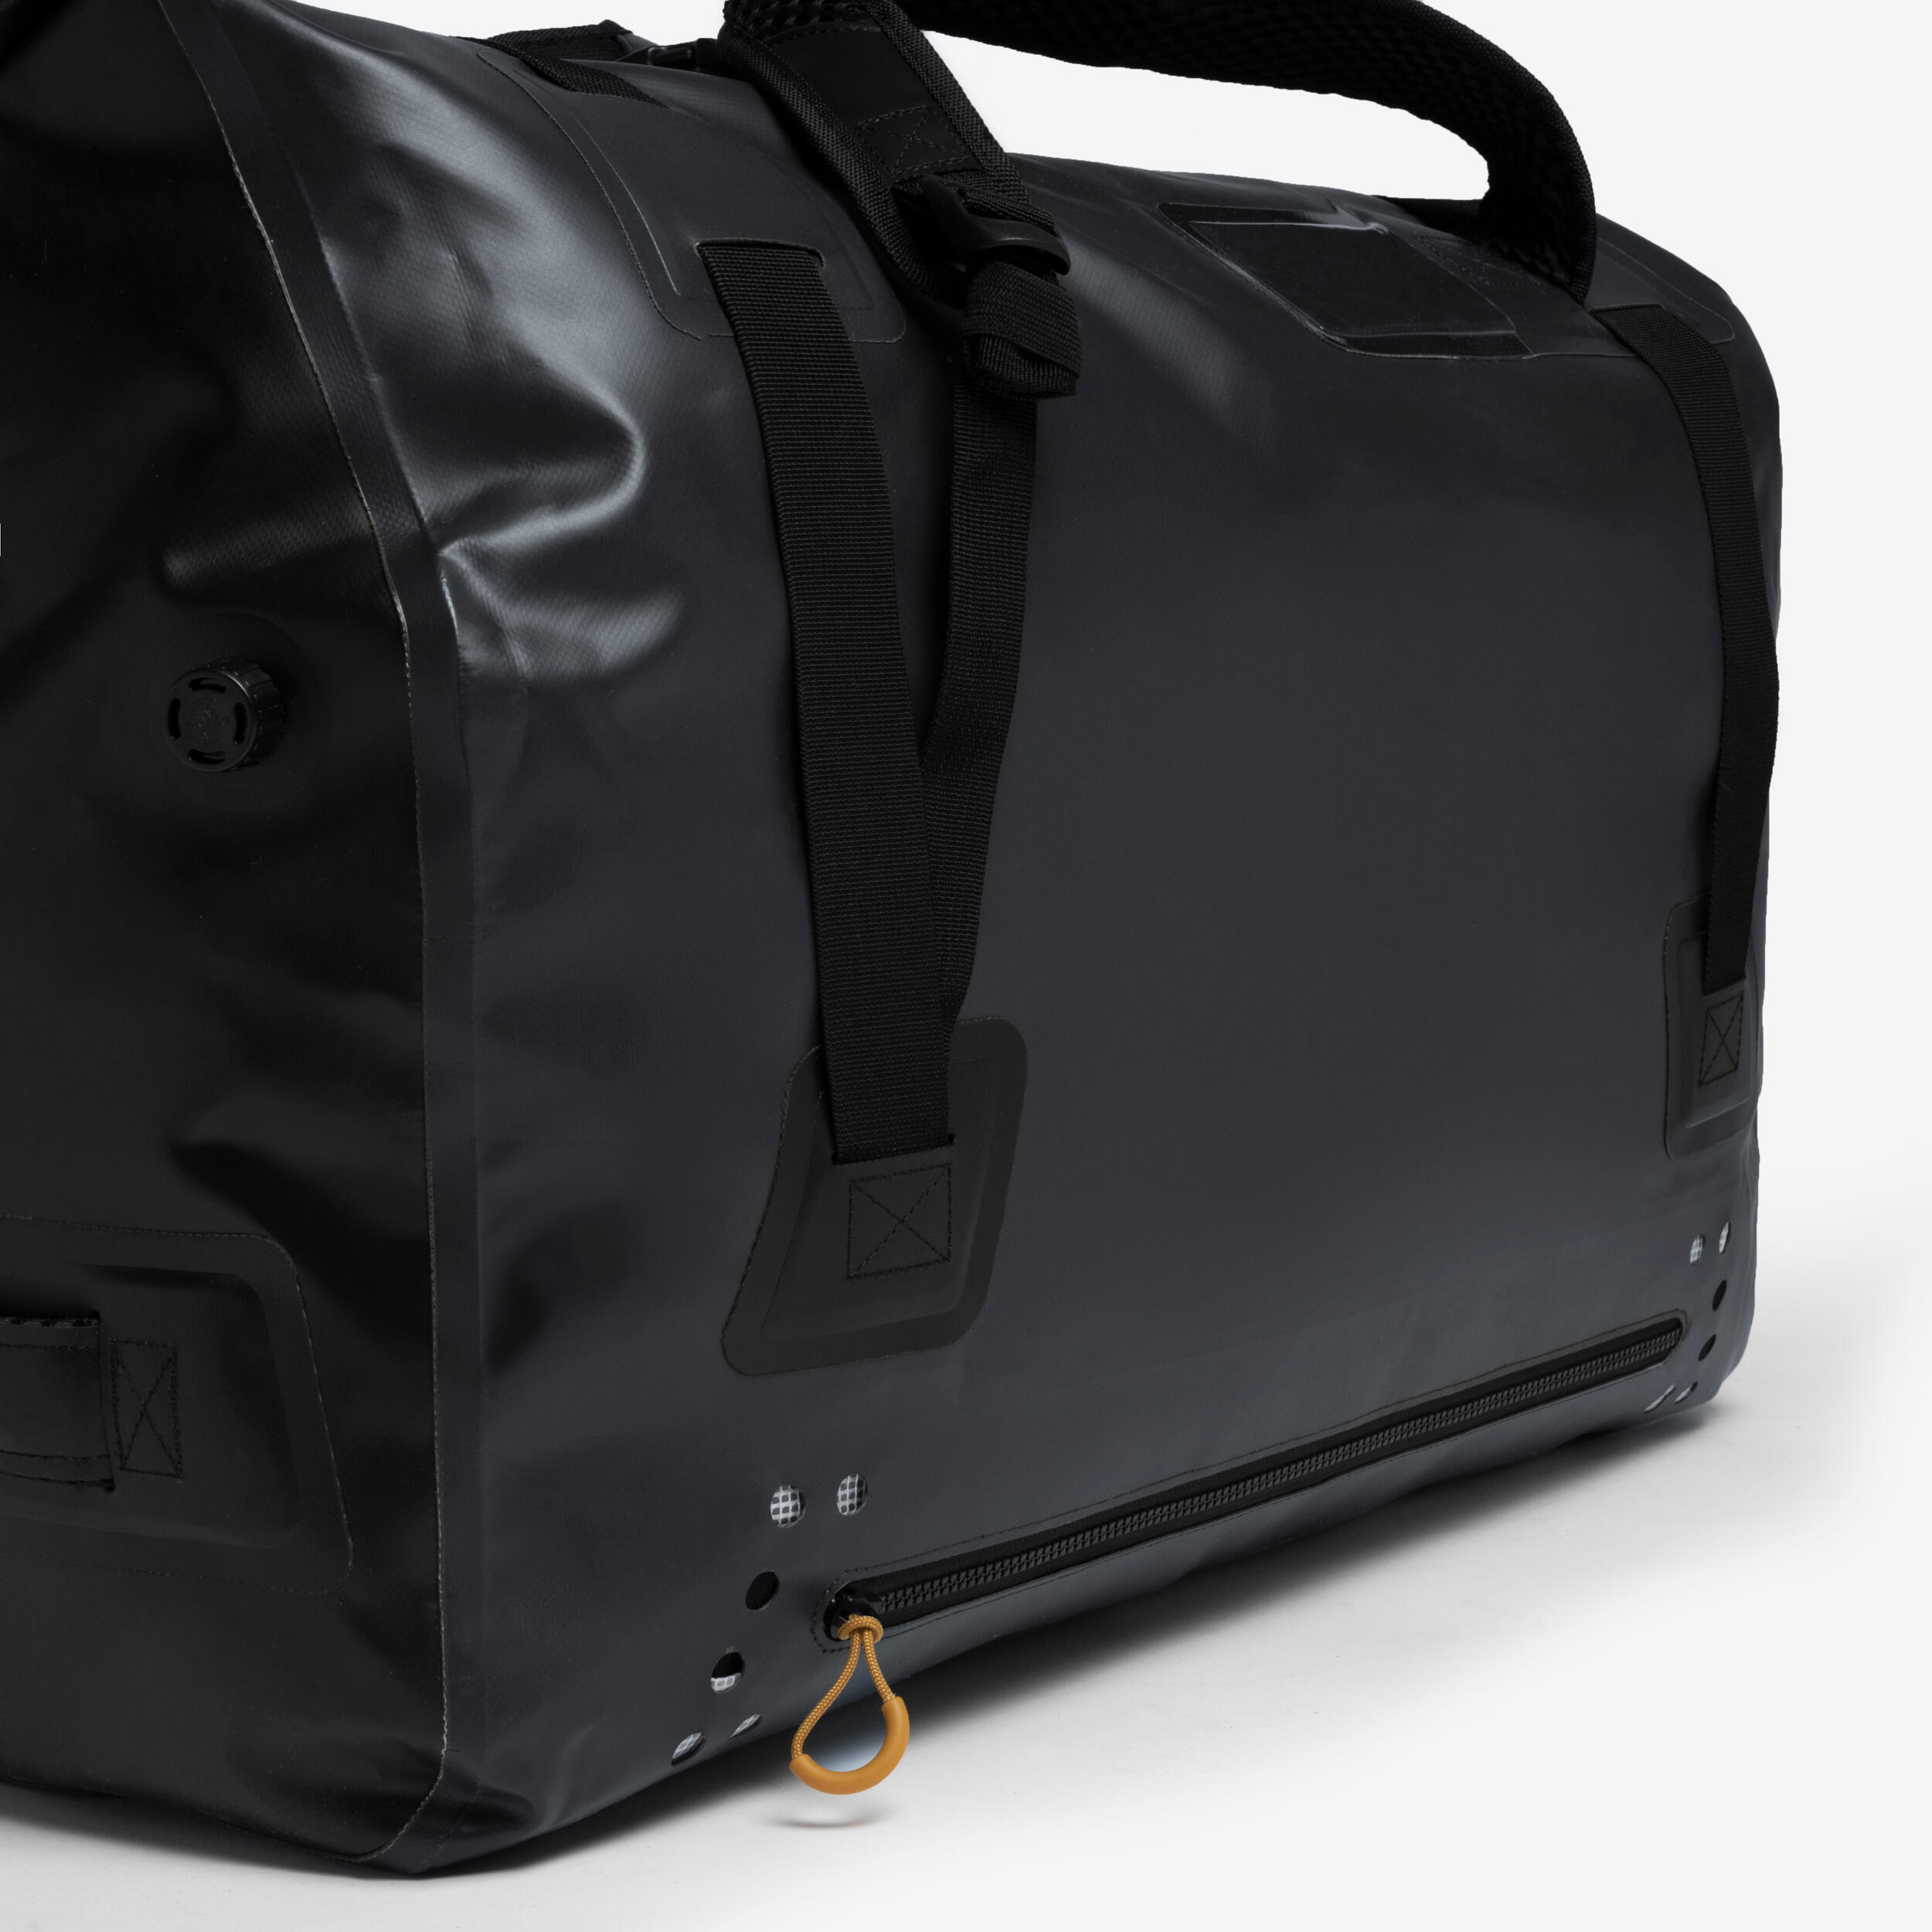 Waterproof duffle bag - 80 L travel bag Anthracite black 3/16